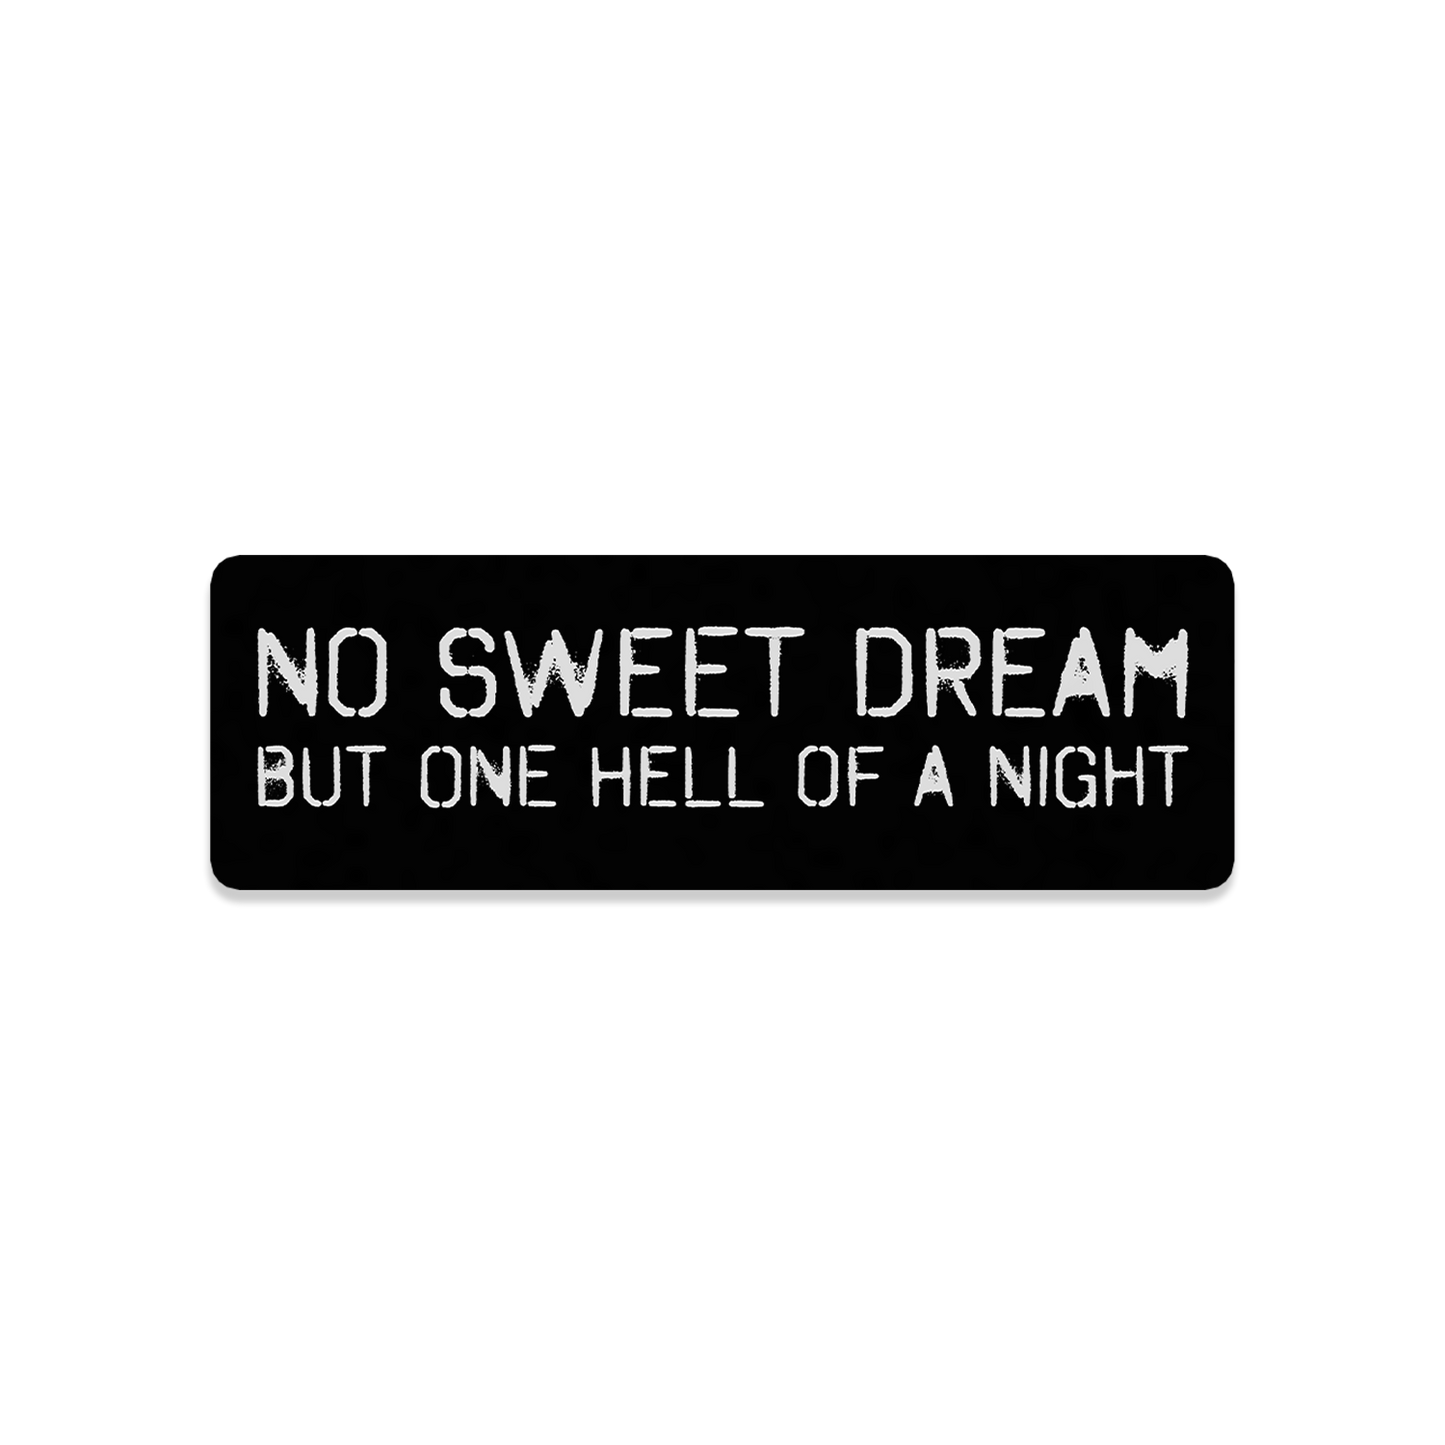 No Sweet Dream 3x1 Sticker